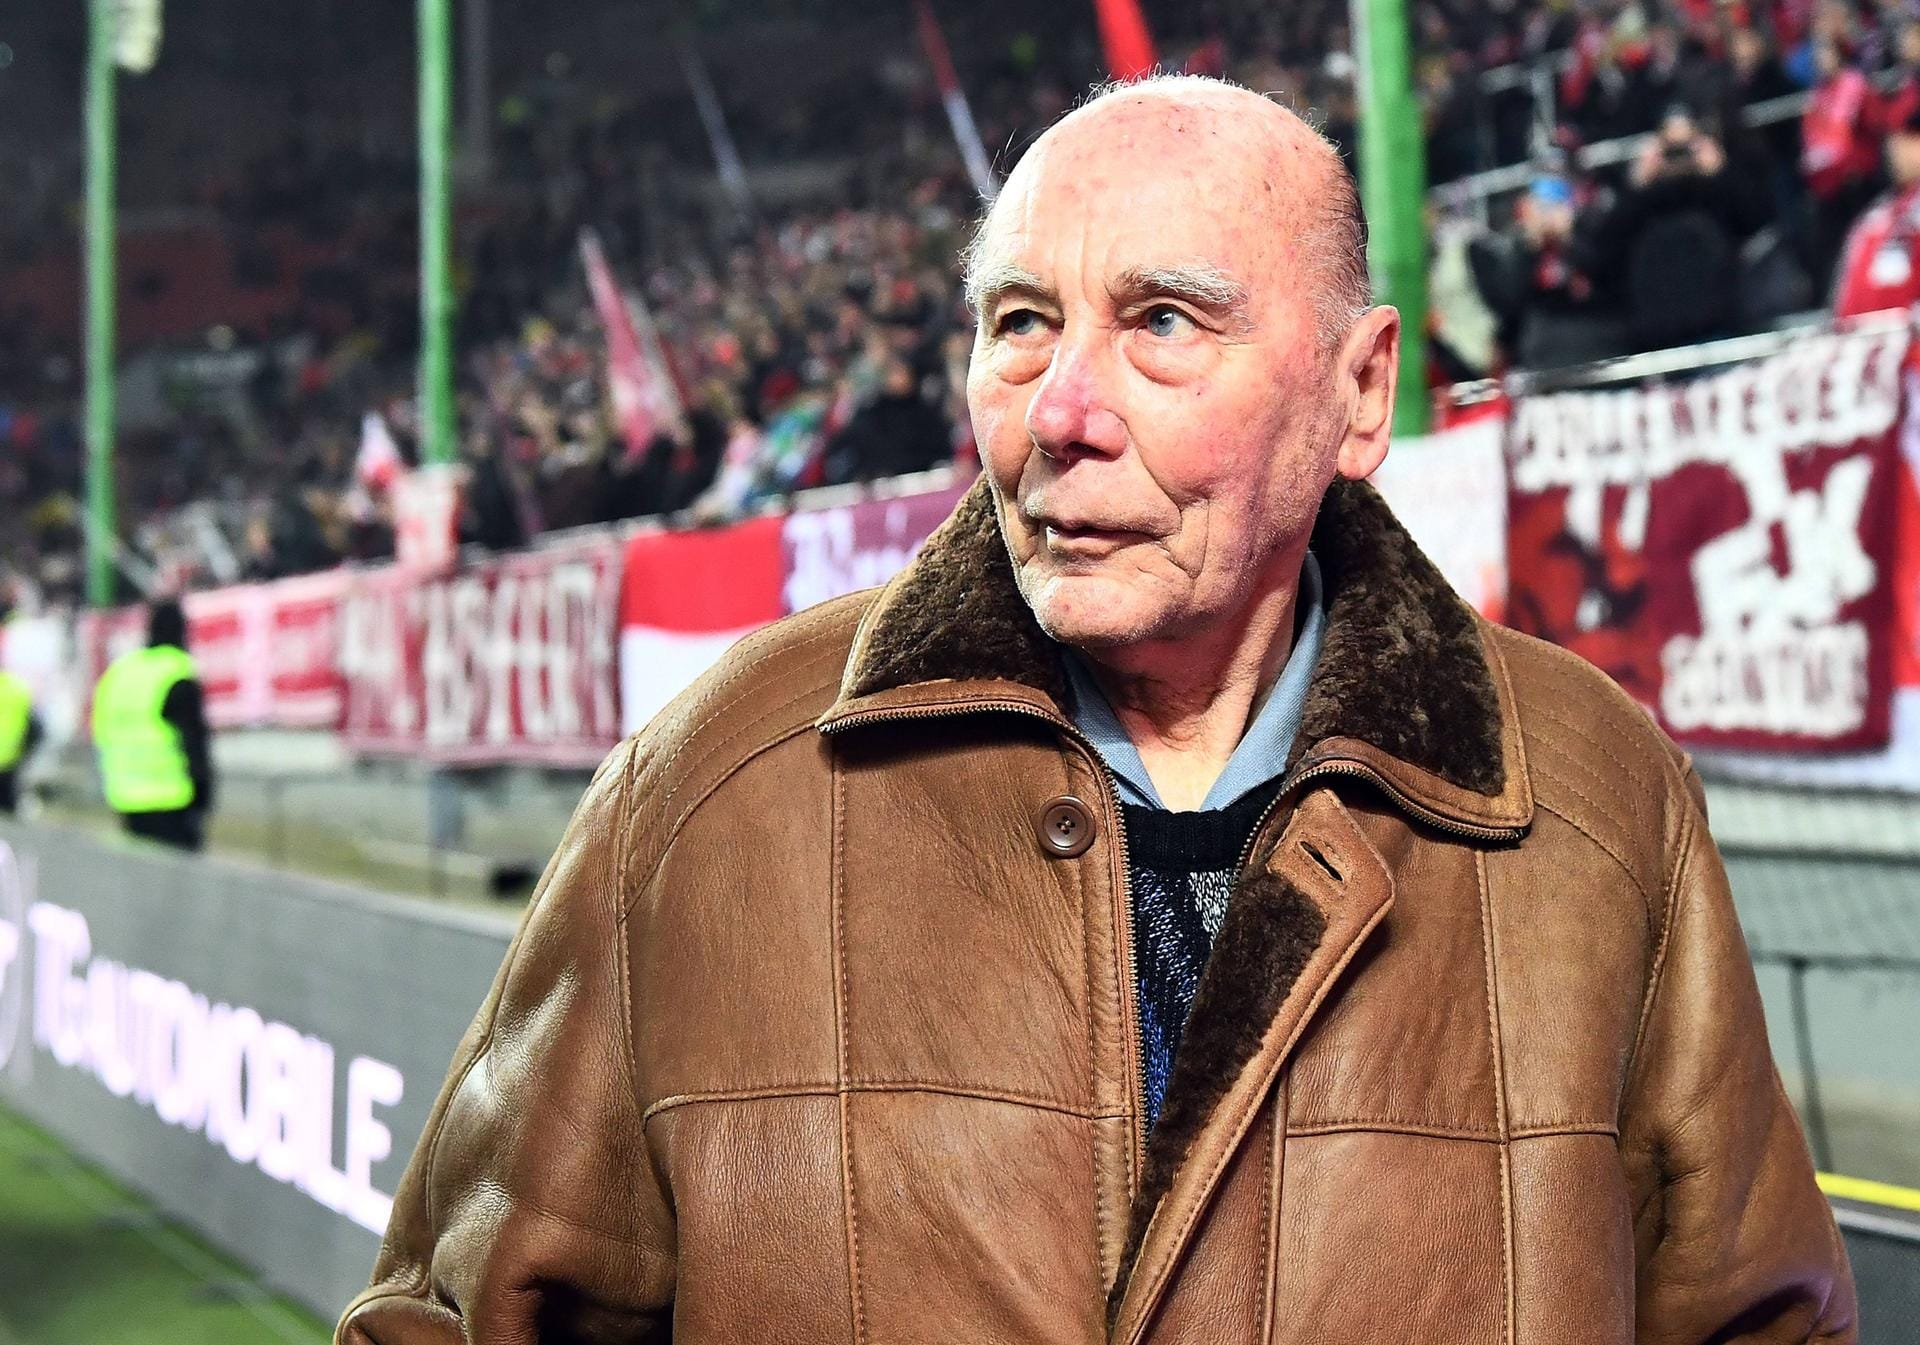 1954er-Weltmeister Horst Eckel: "Ich tippe auf ein spannendes Finale bis zur letzten Minute, weil sowohl Bayern mit Frankfurt als auch der BVB mit Gladbach noch sehr schwere Gegner haben. Letztlich werden die Bayern ihren Vorsprung aber verteidigen."